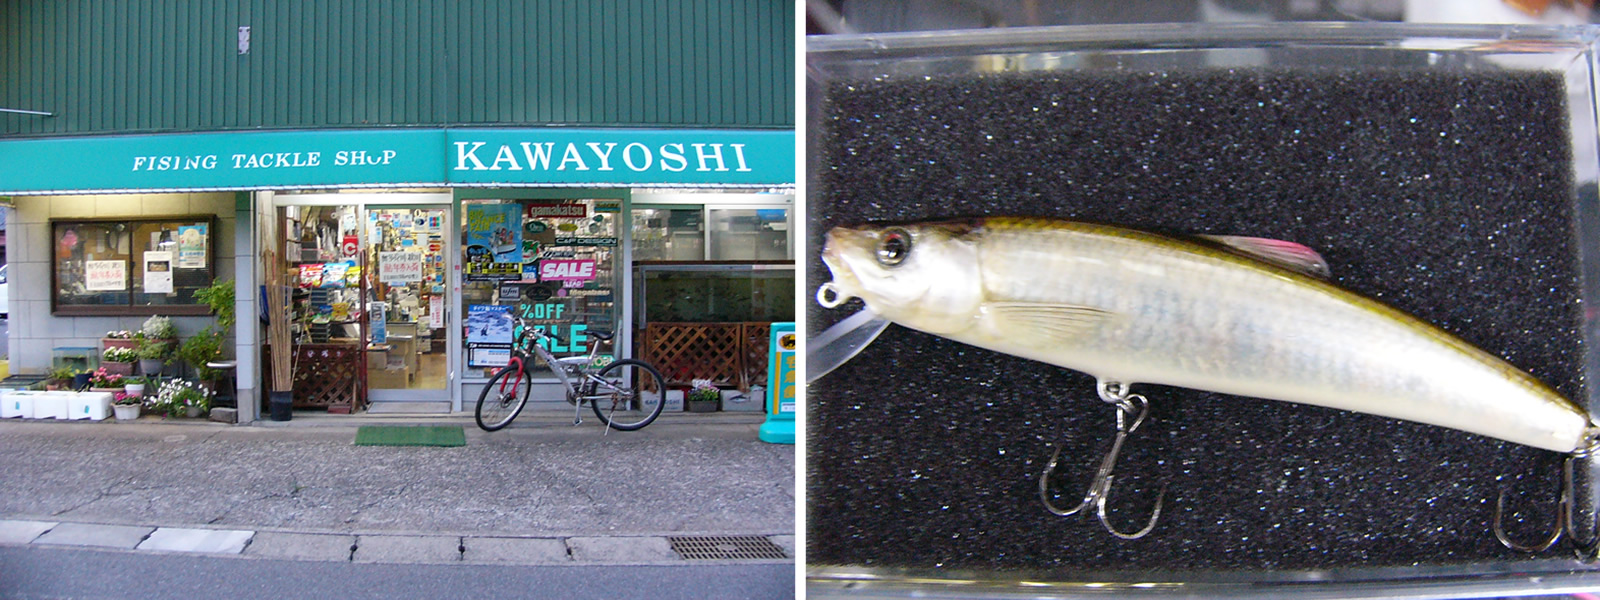 青梅市は川よし釣具店と、お店で扱っているルアー、オカベミノー。オイカワの皮貼り。